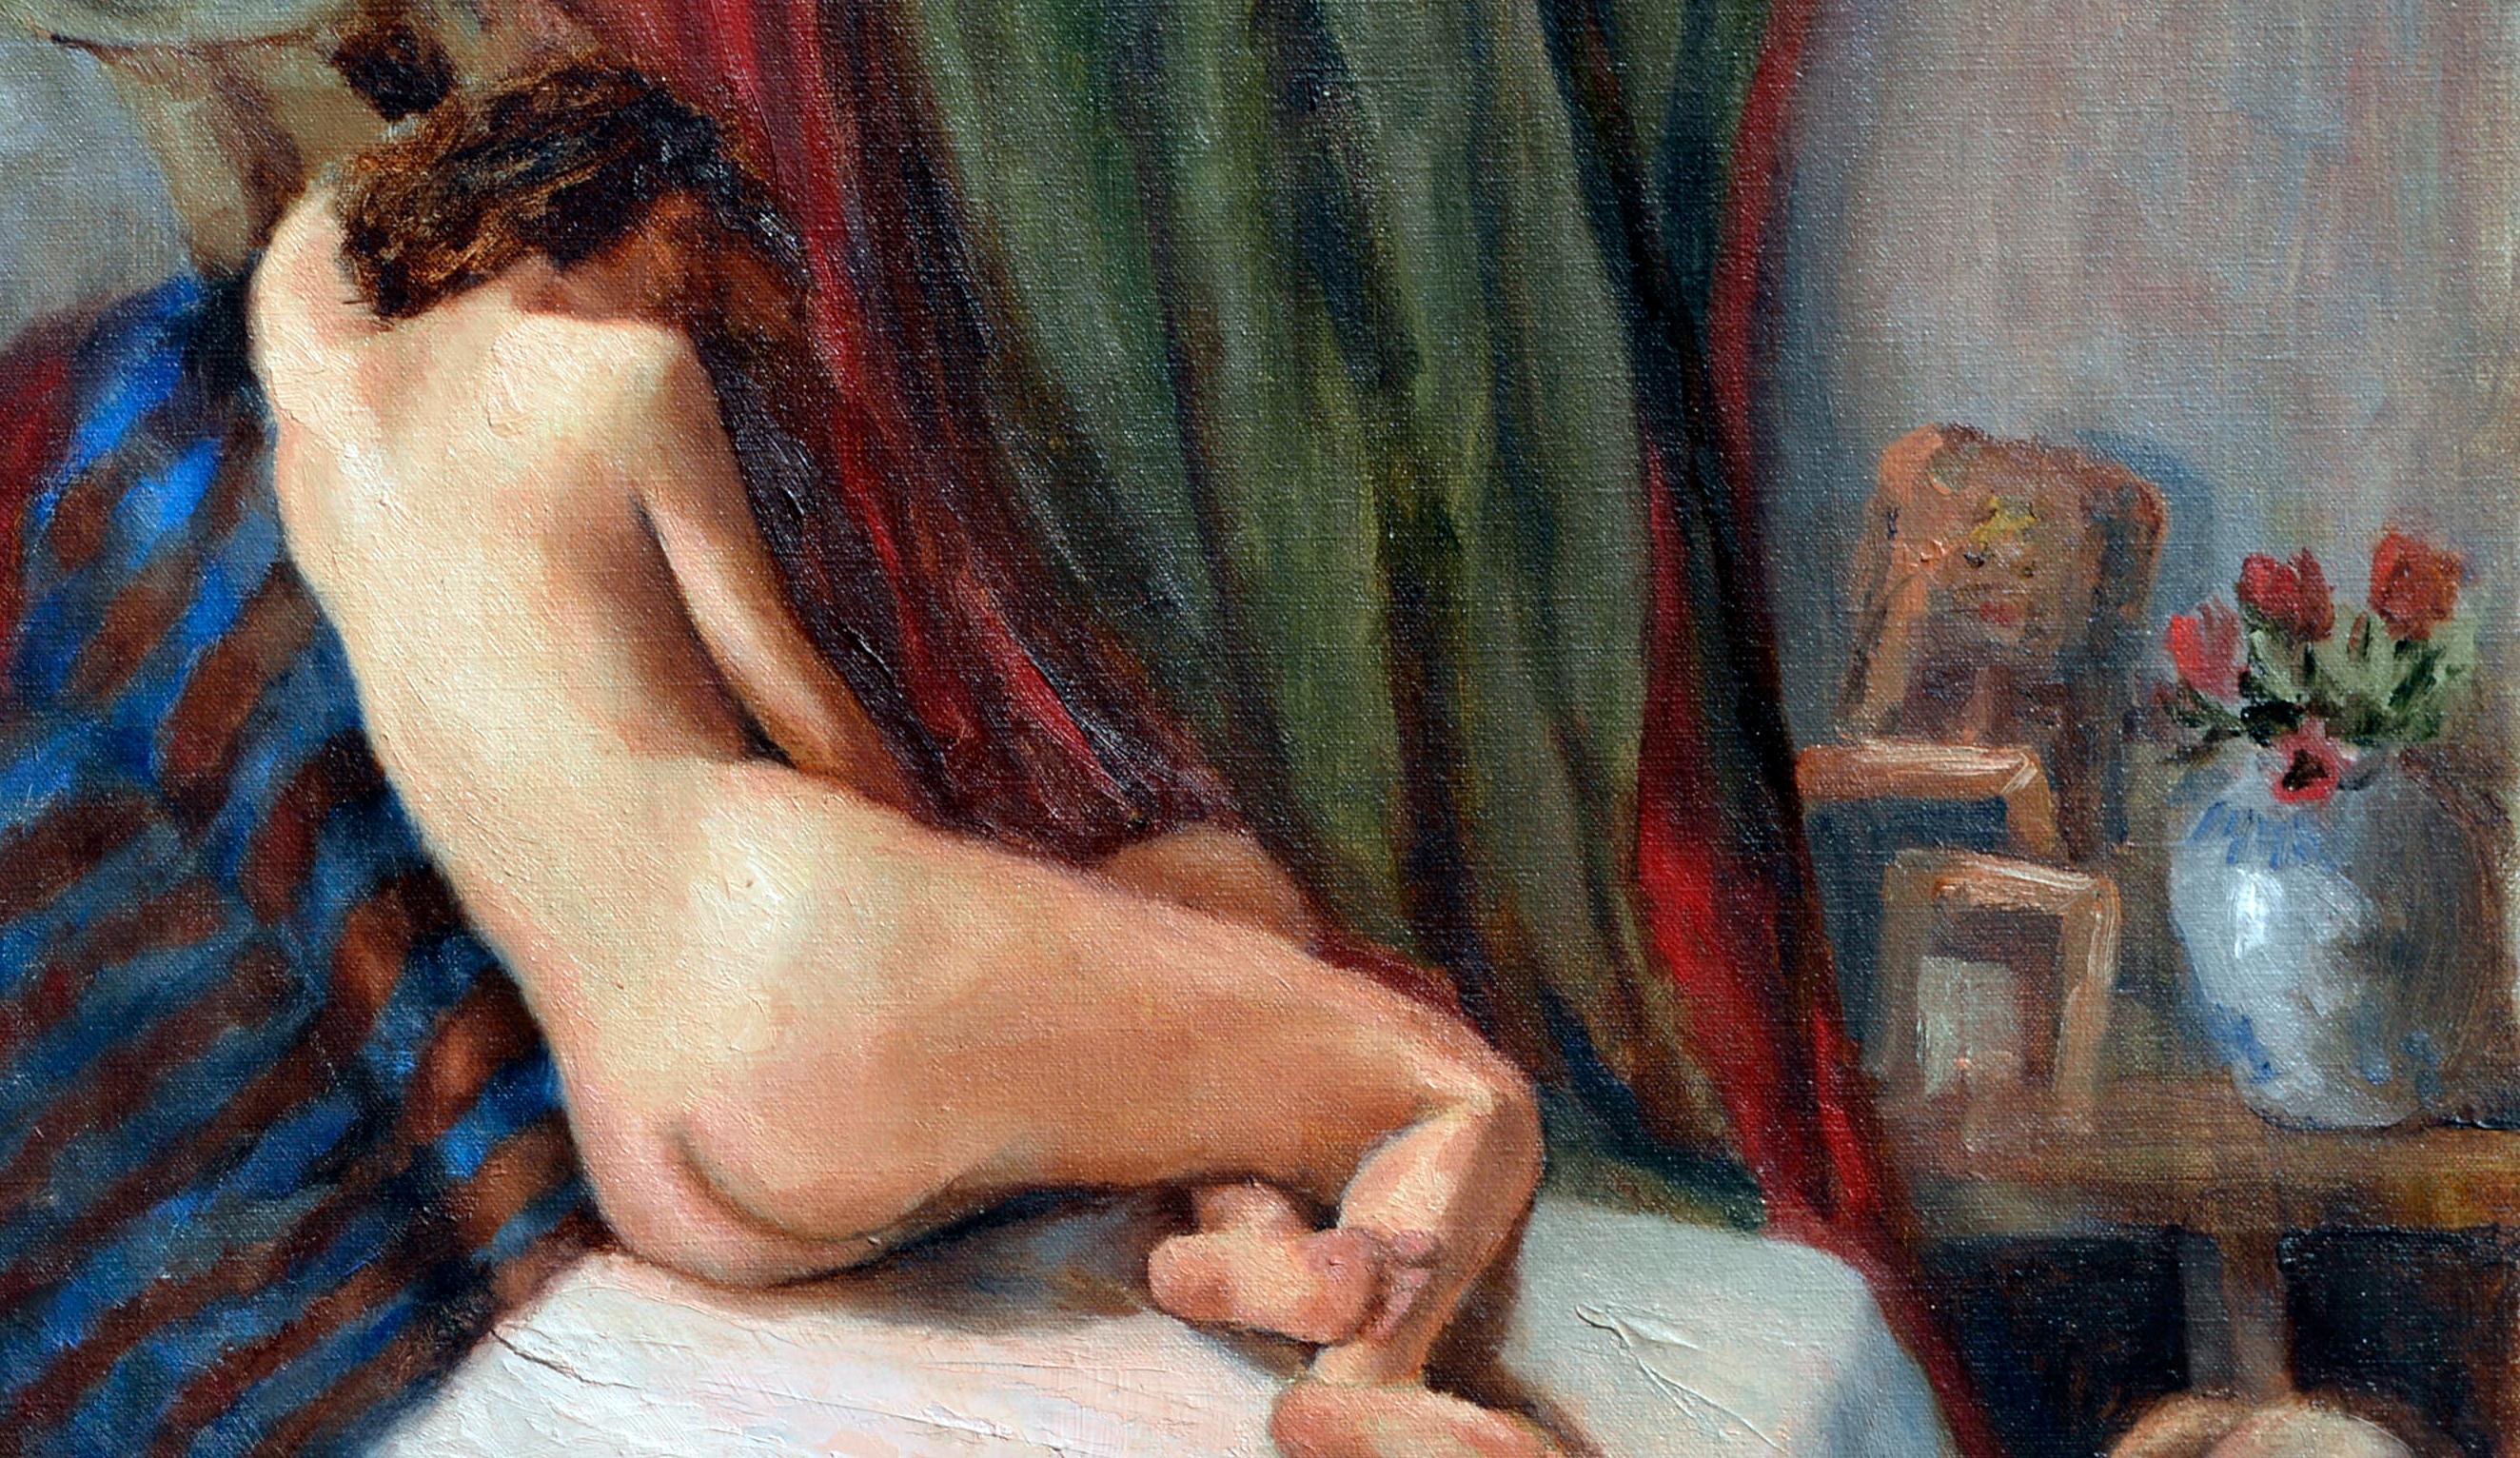 Liegende nackte Figur  (Amerikanischer Impressionismus), Painting, von David Hunt